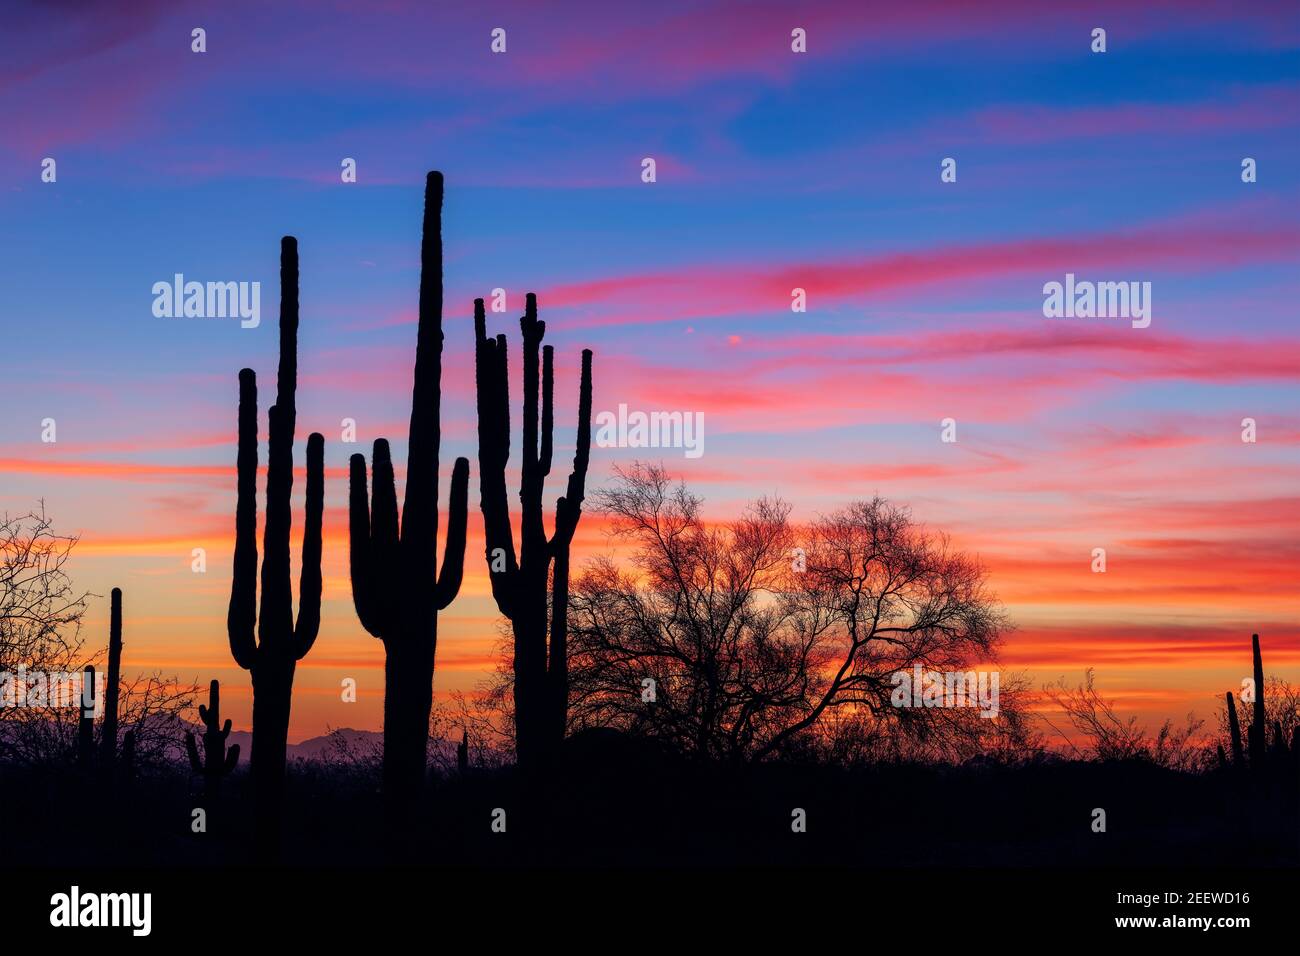 Paysage pittoresque avec cactus Saguaro dans le désert de Sonoran au coucher du soleil à Phoenix, Arizona Banque D'Images